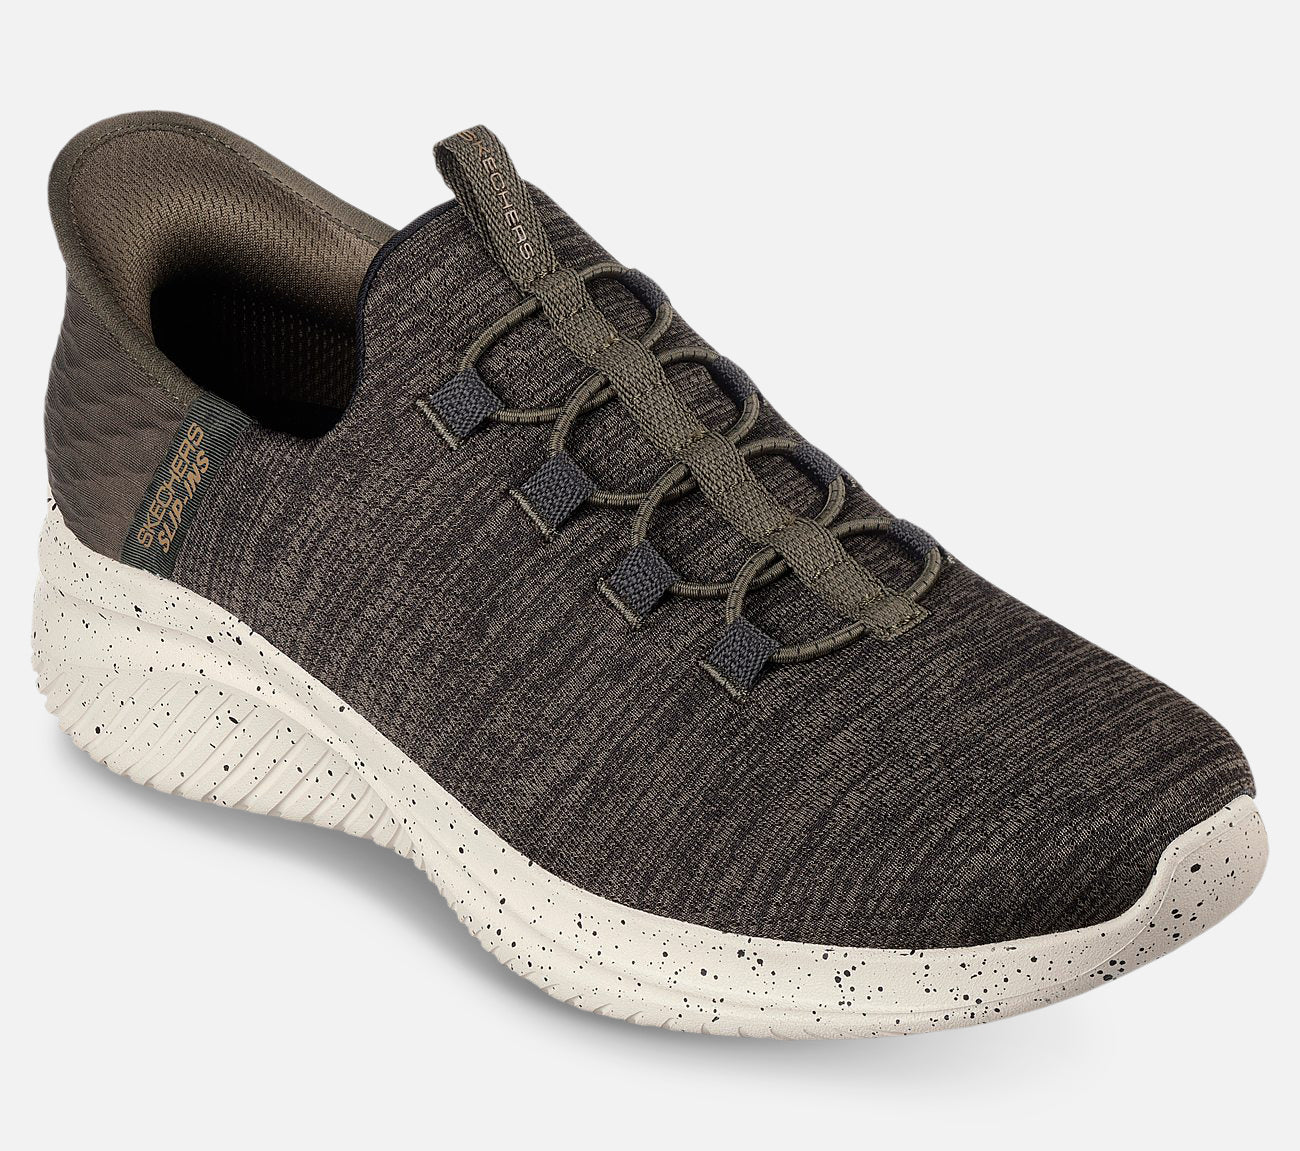 Slip-ins: Ultra Flex 3.0 – Right Away Shoe Skechers